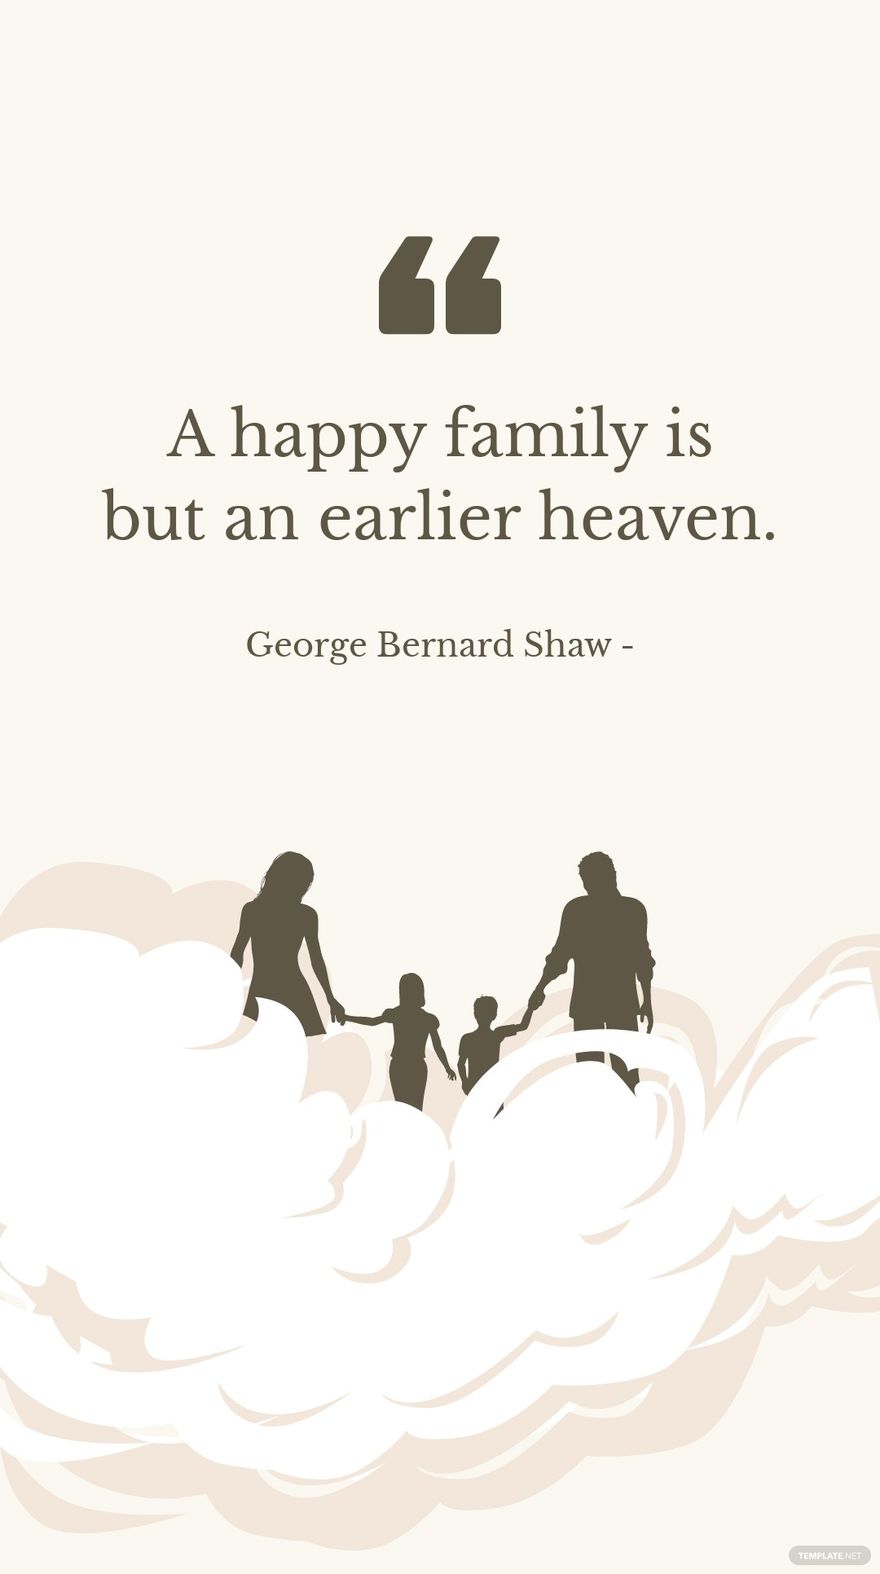 Free George Bernard Shaw - A happy family is but an earlier heaven. in JPG